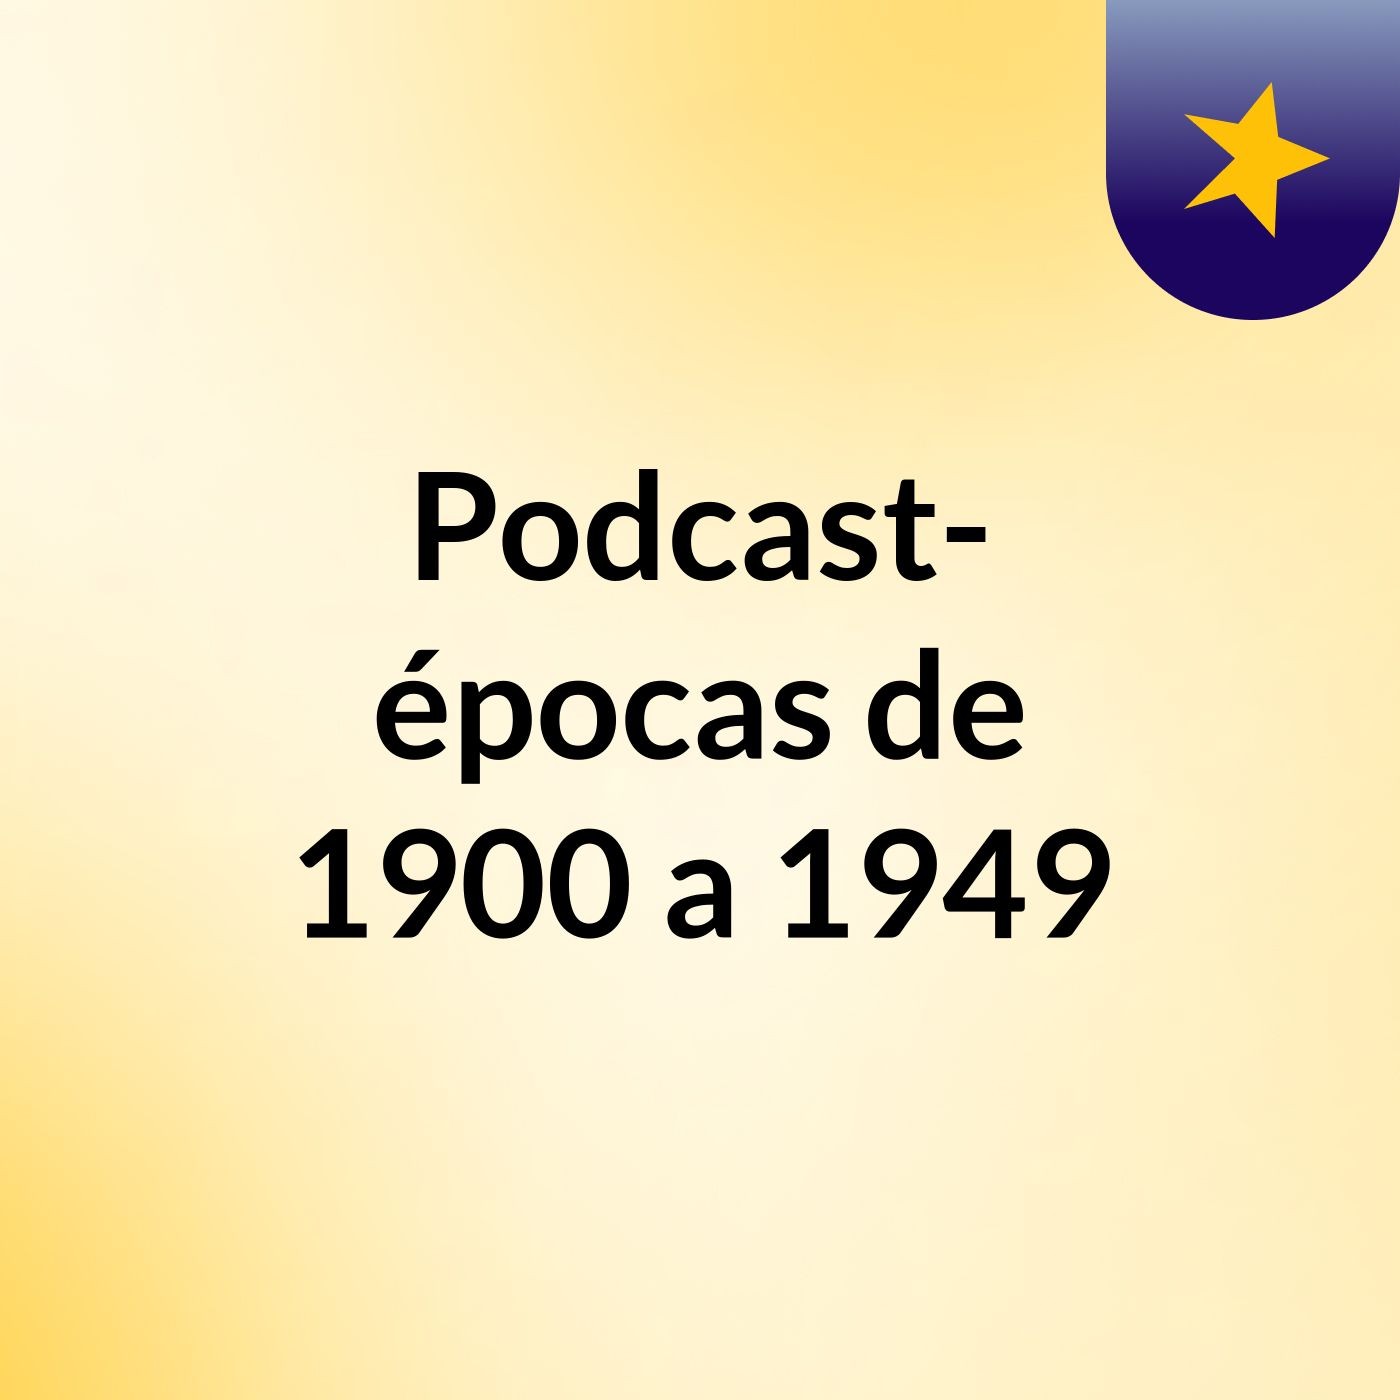 Podcast- épocas de 1900 a 1949